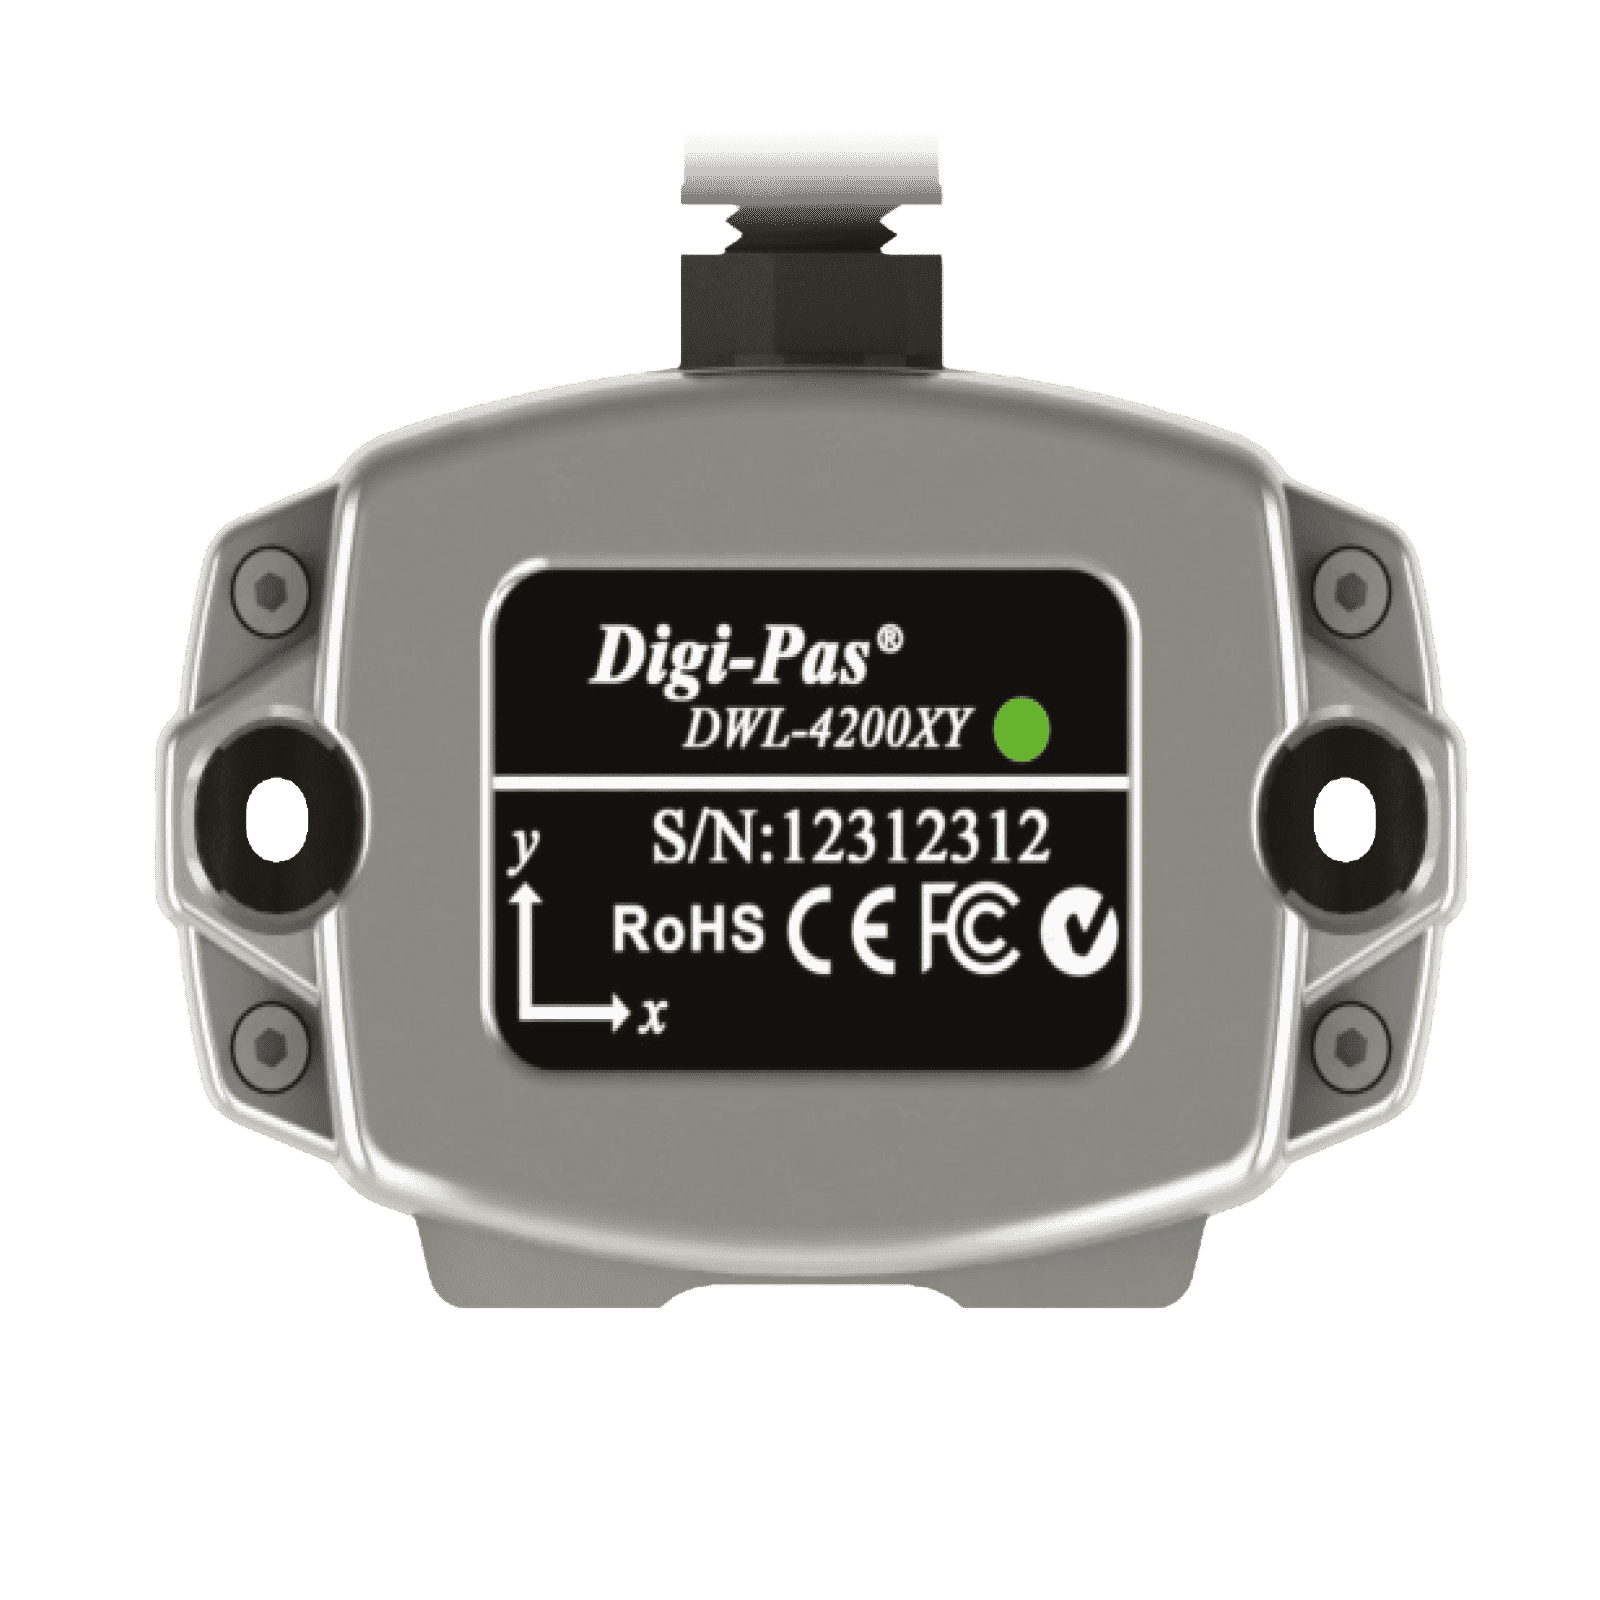 digipas 4200 XY digitale Wasserwaage Sensor Modul